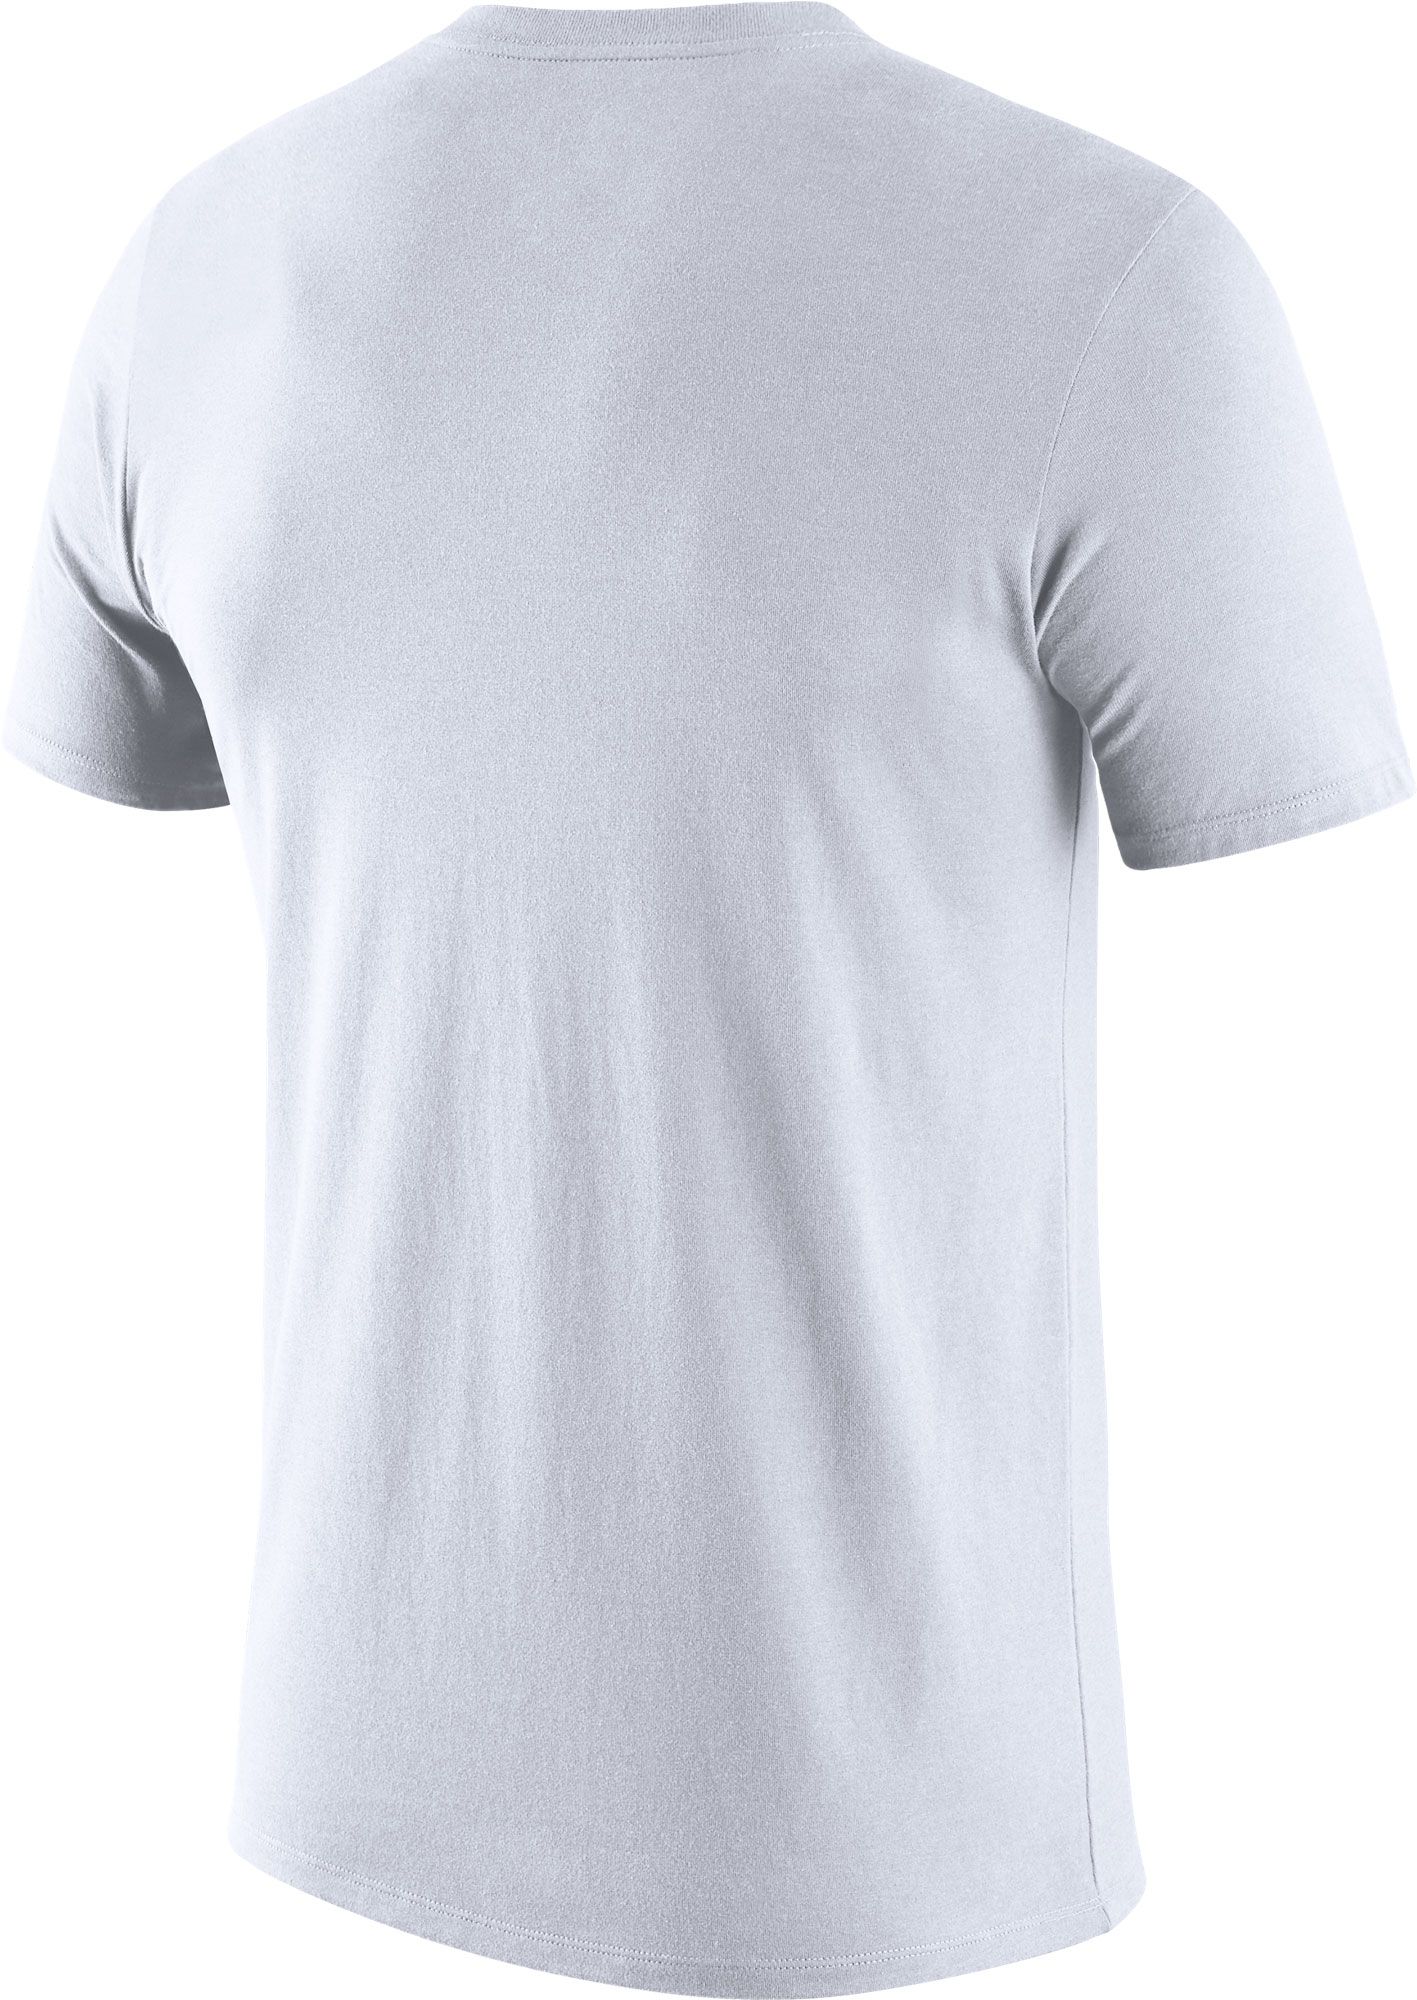 Nike Men's Kentucky Wildcats White Futura T-Shirt